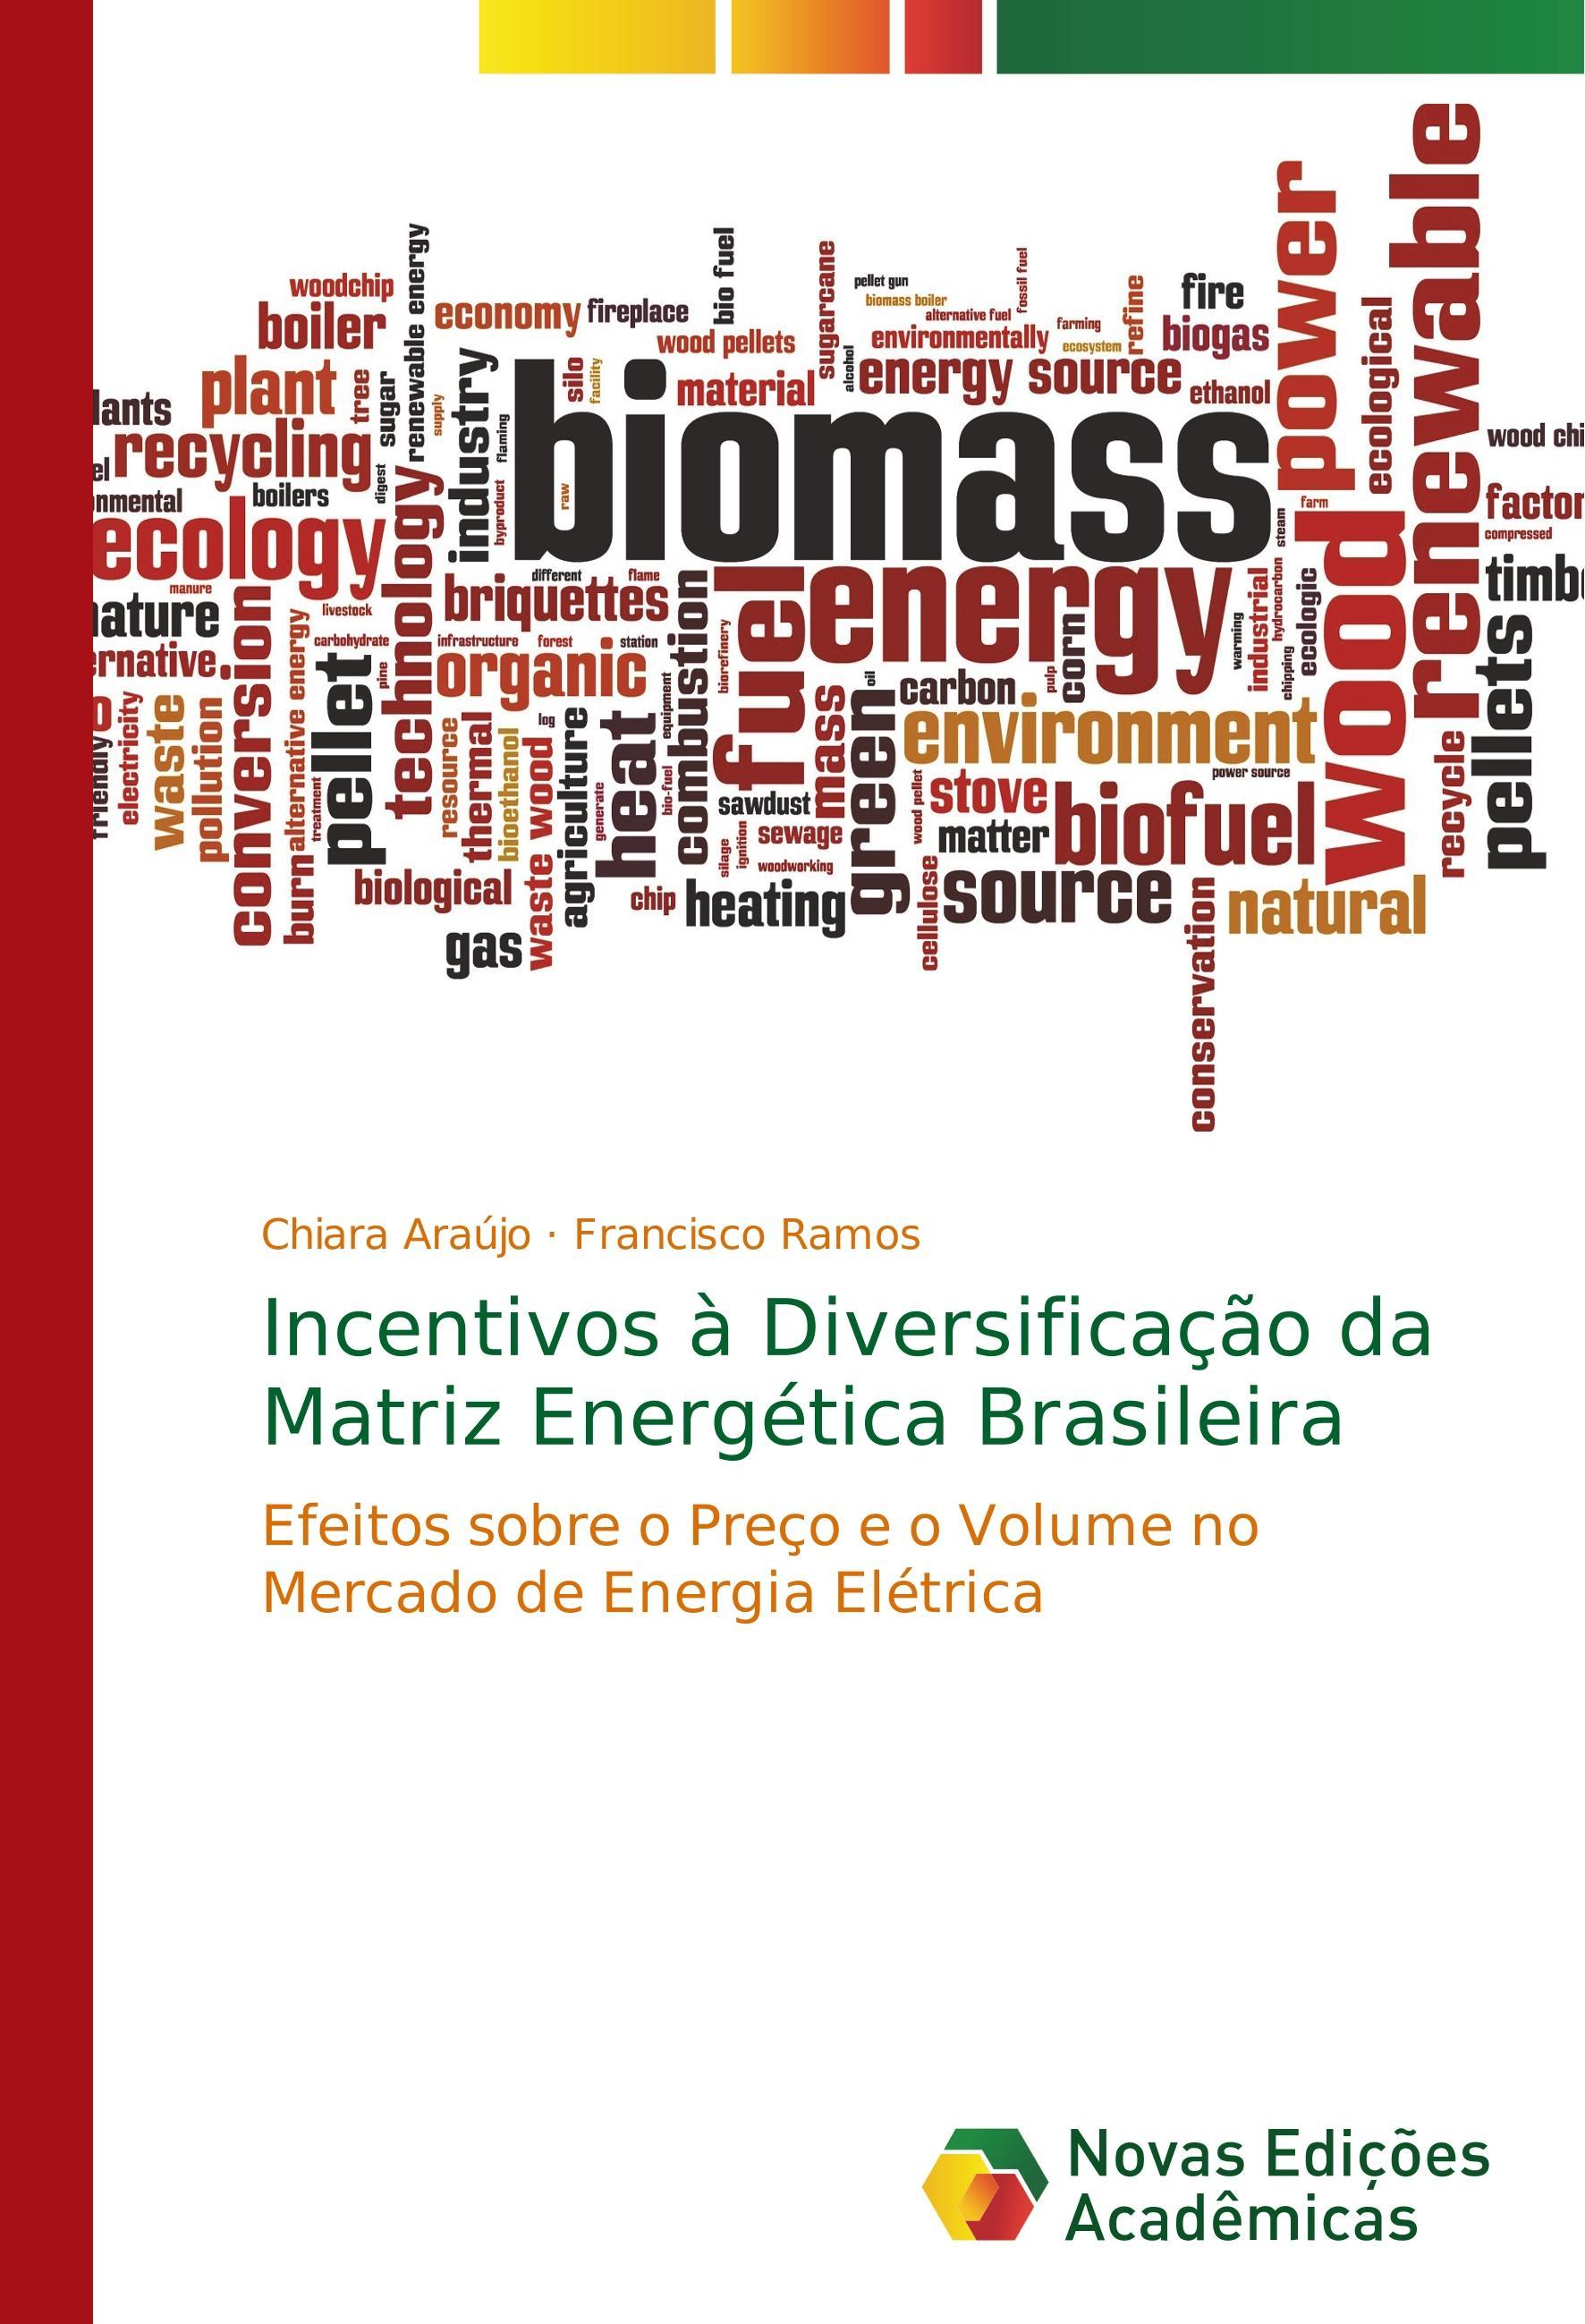 Incentivos à Diversificação da Matriz Energética Brasileira - Araújo, Chiara Ramos, Francisco